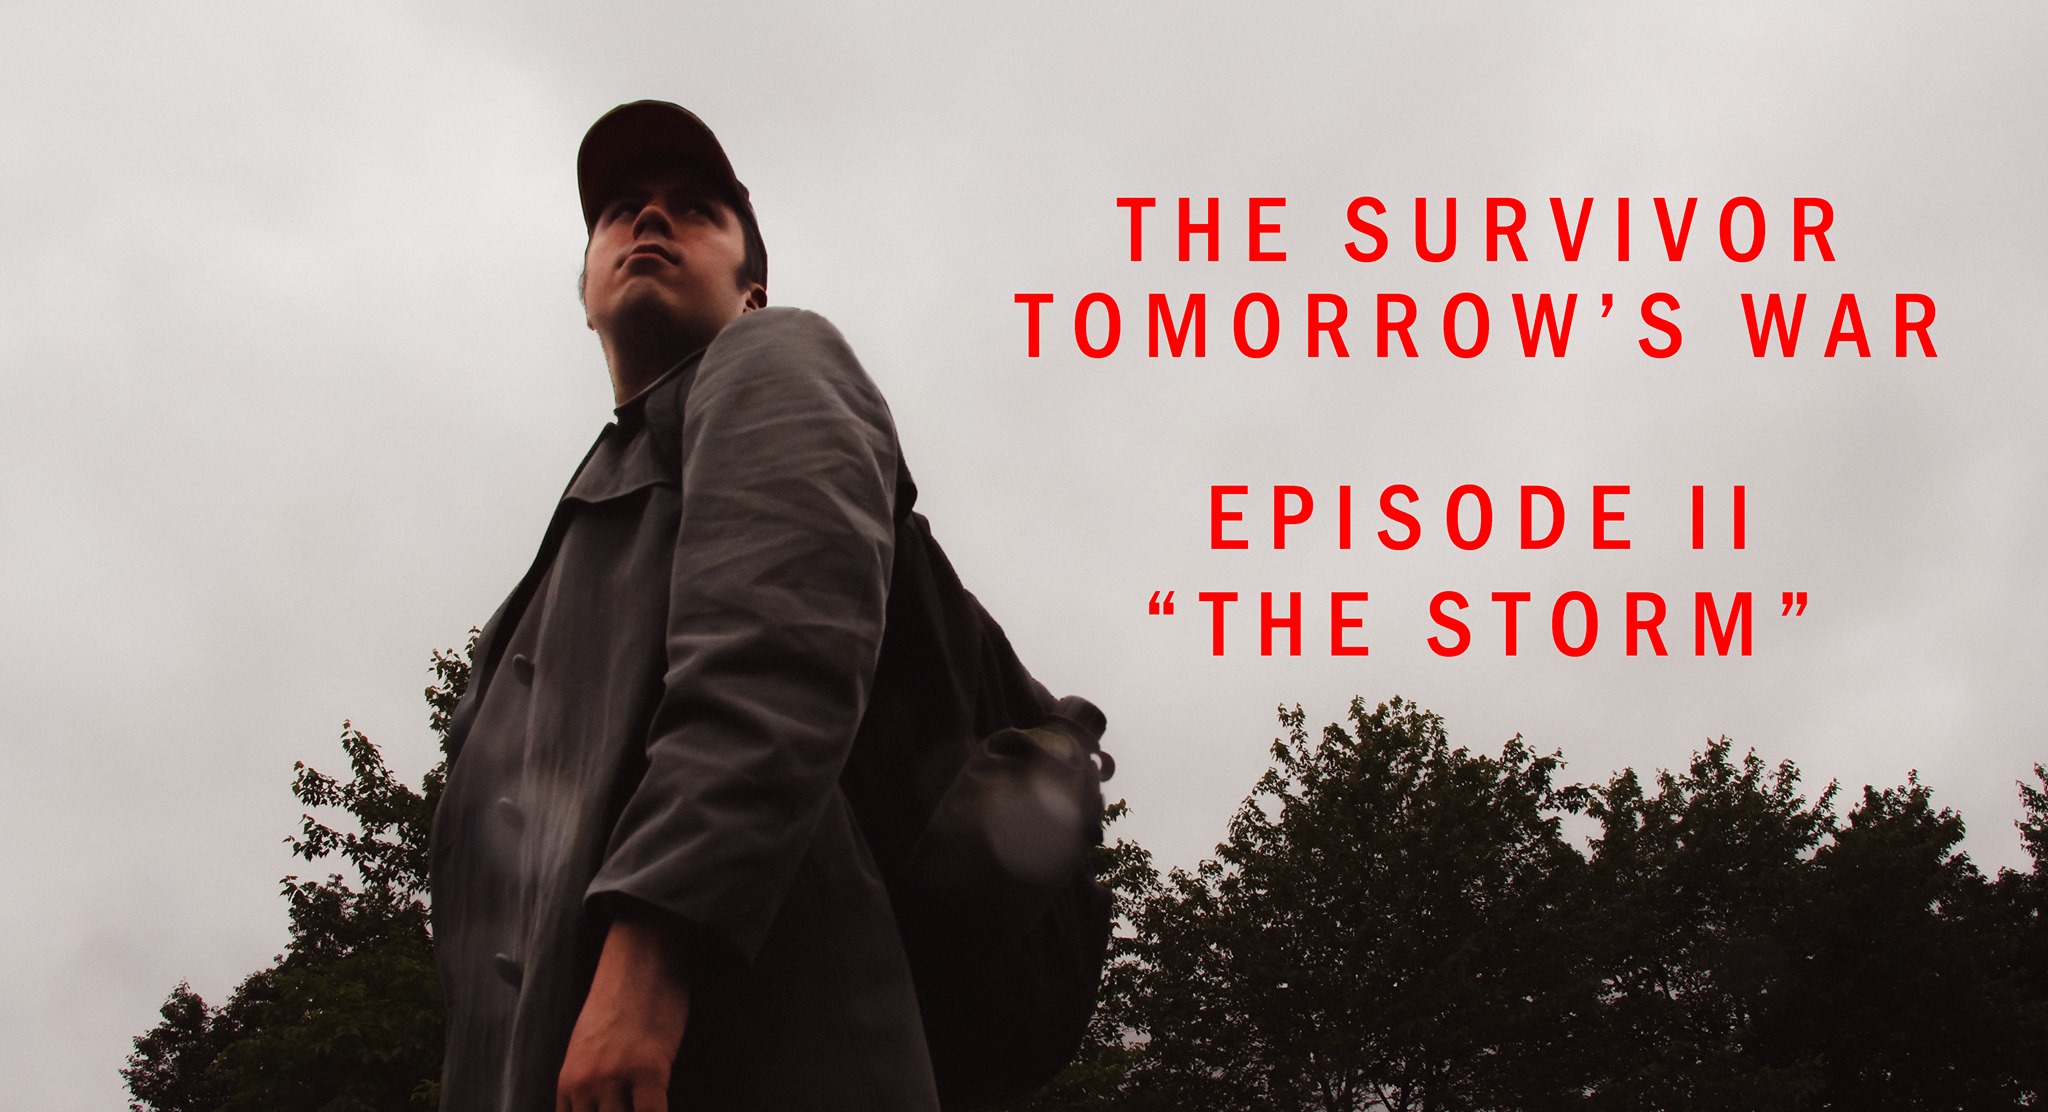 The Survivor: Tomorrow's War